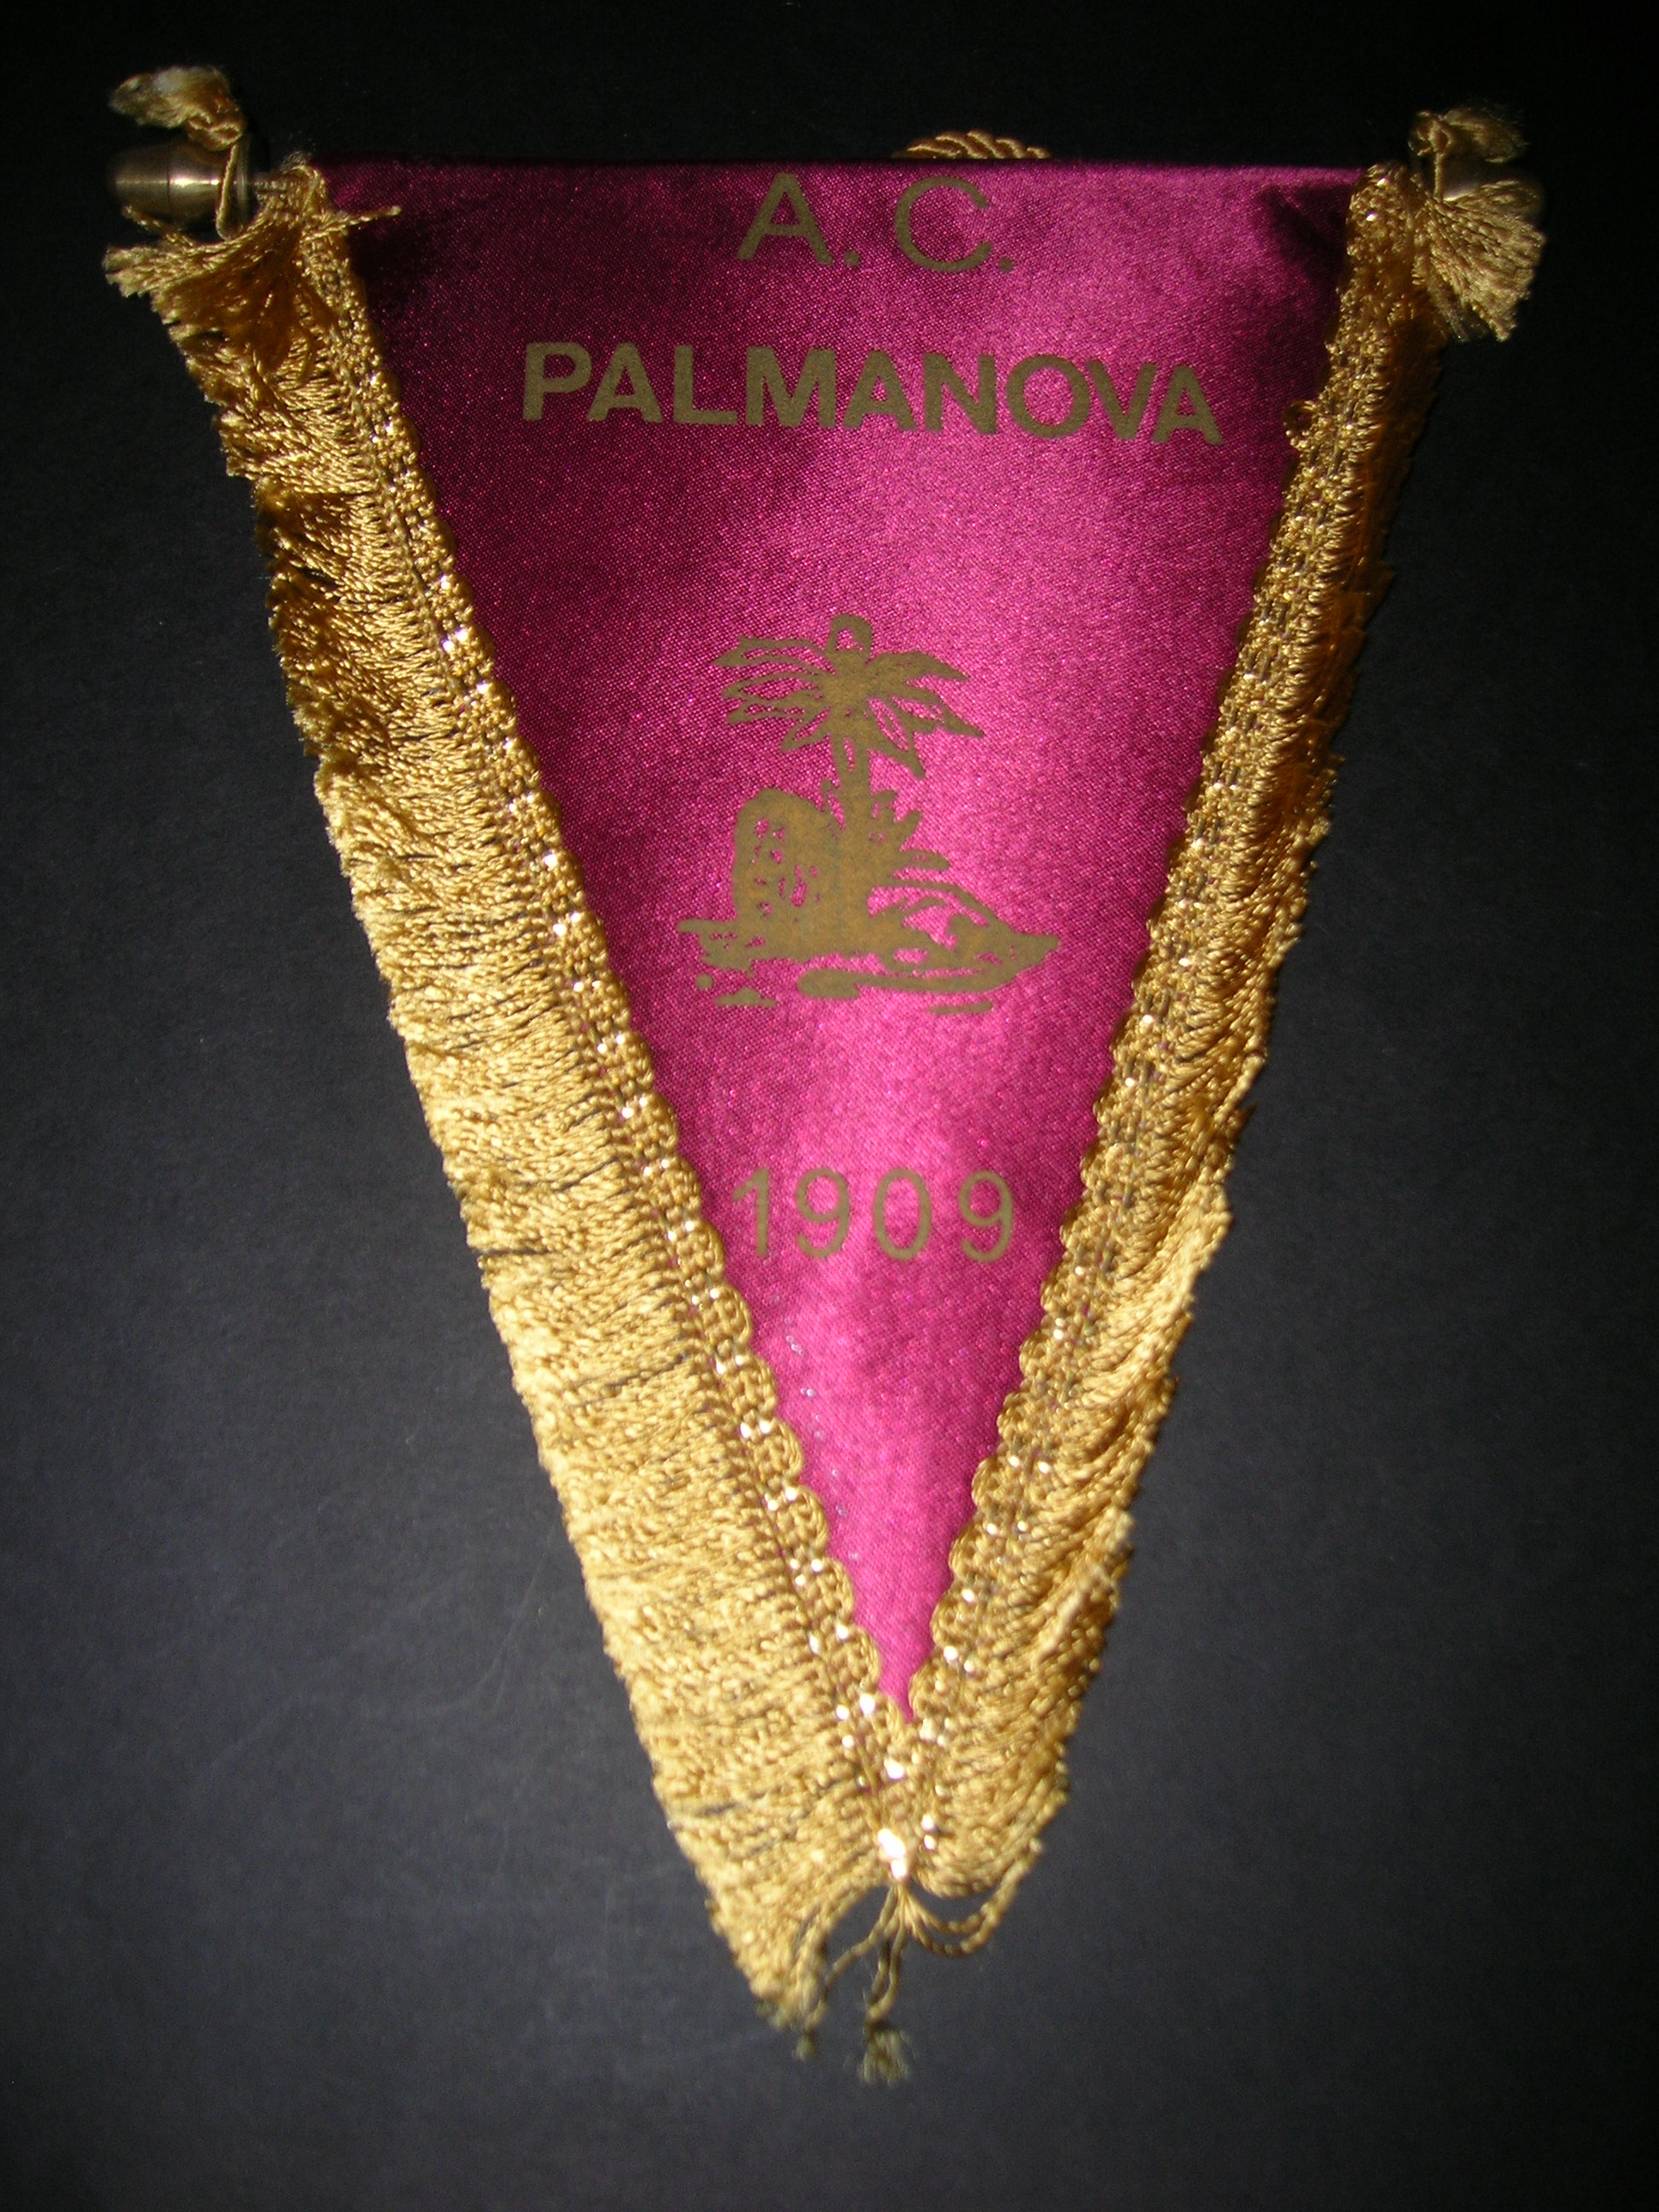 A C.  Palmanova  279